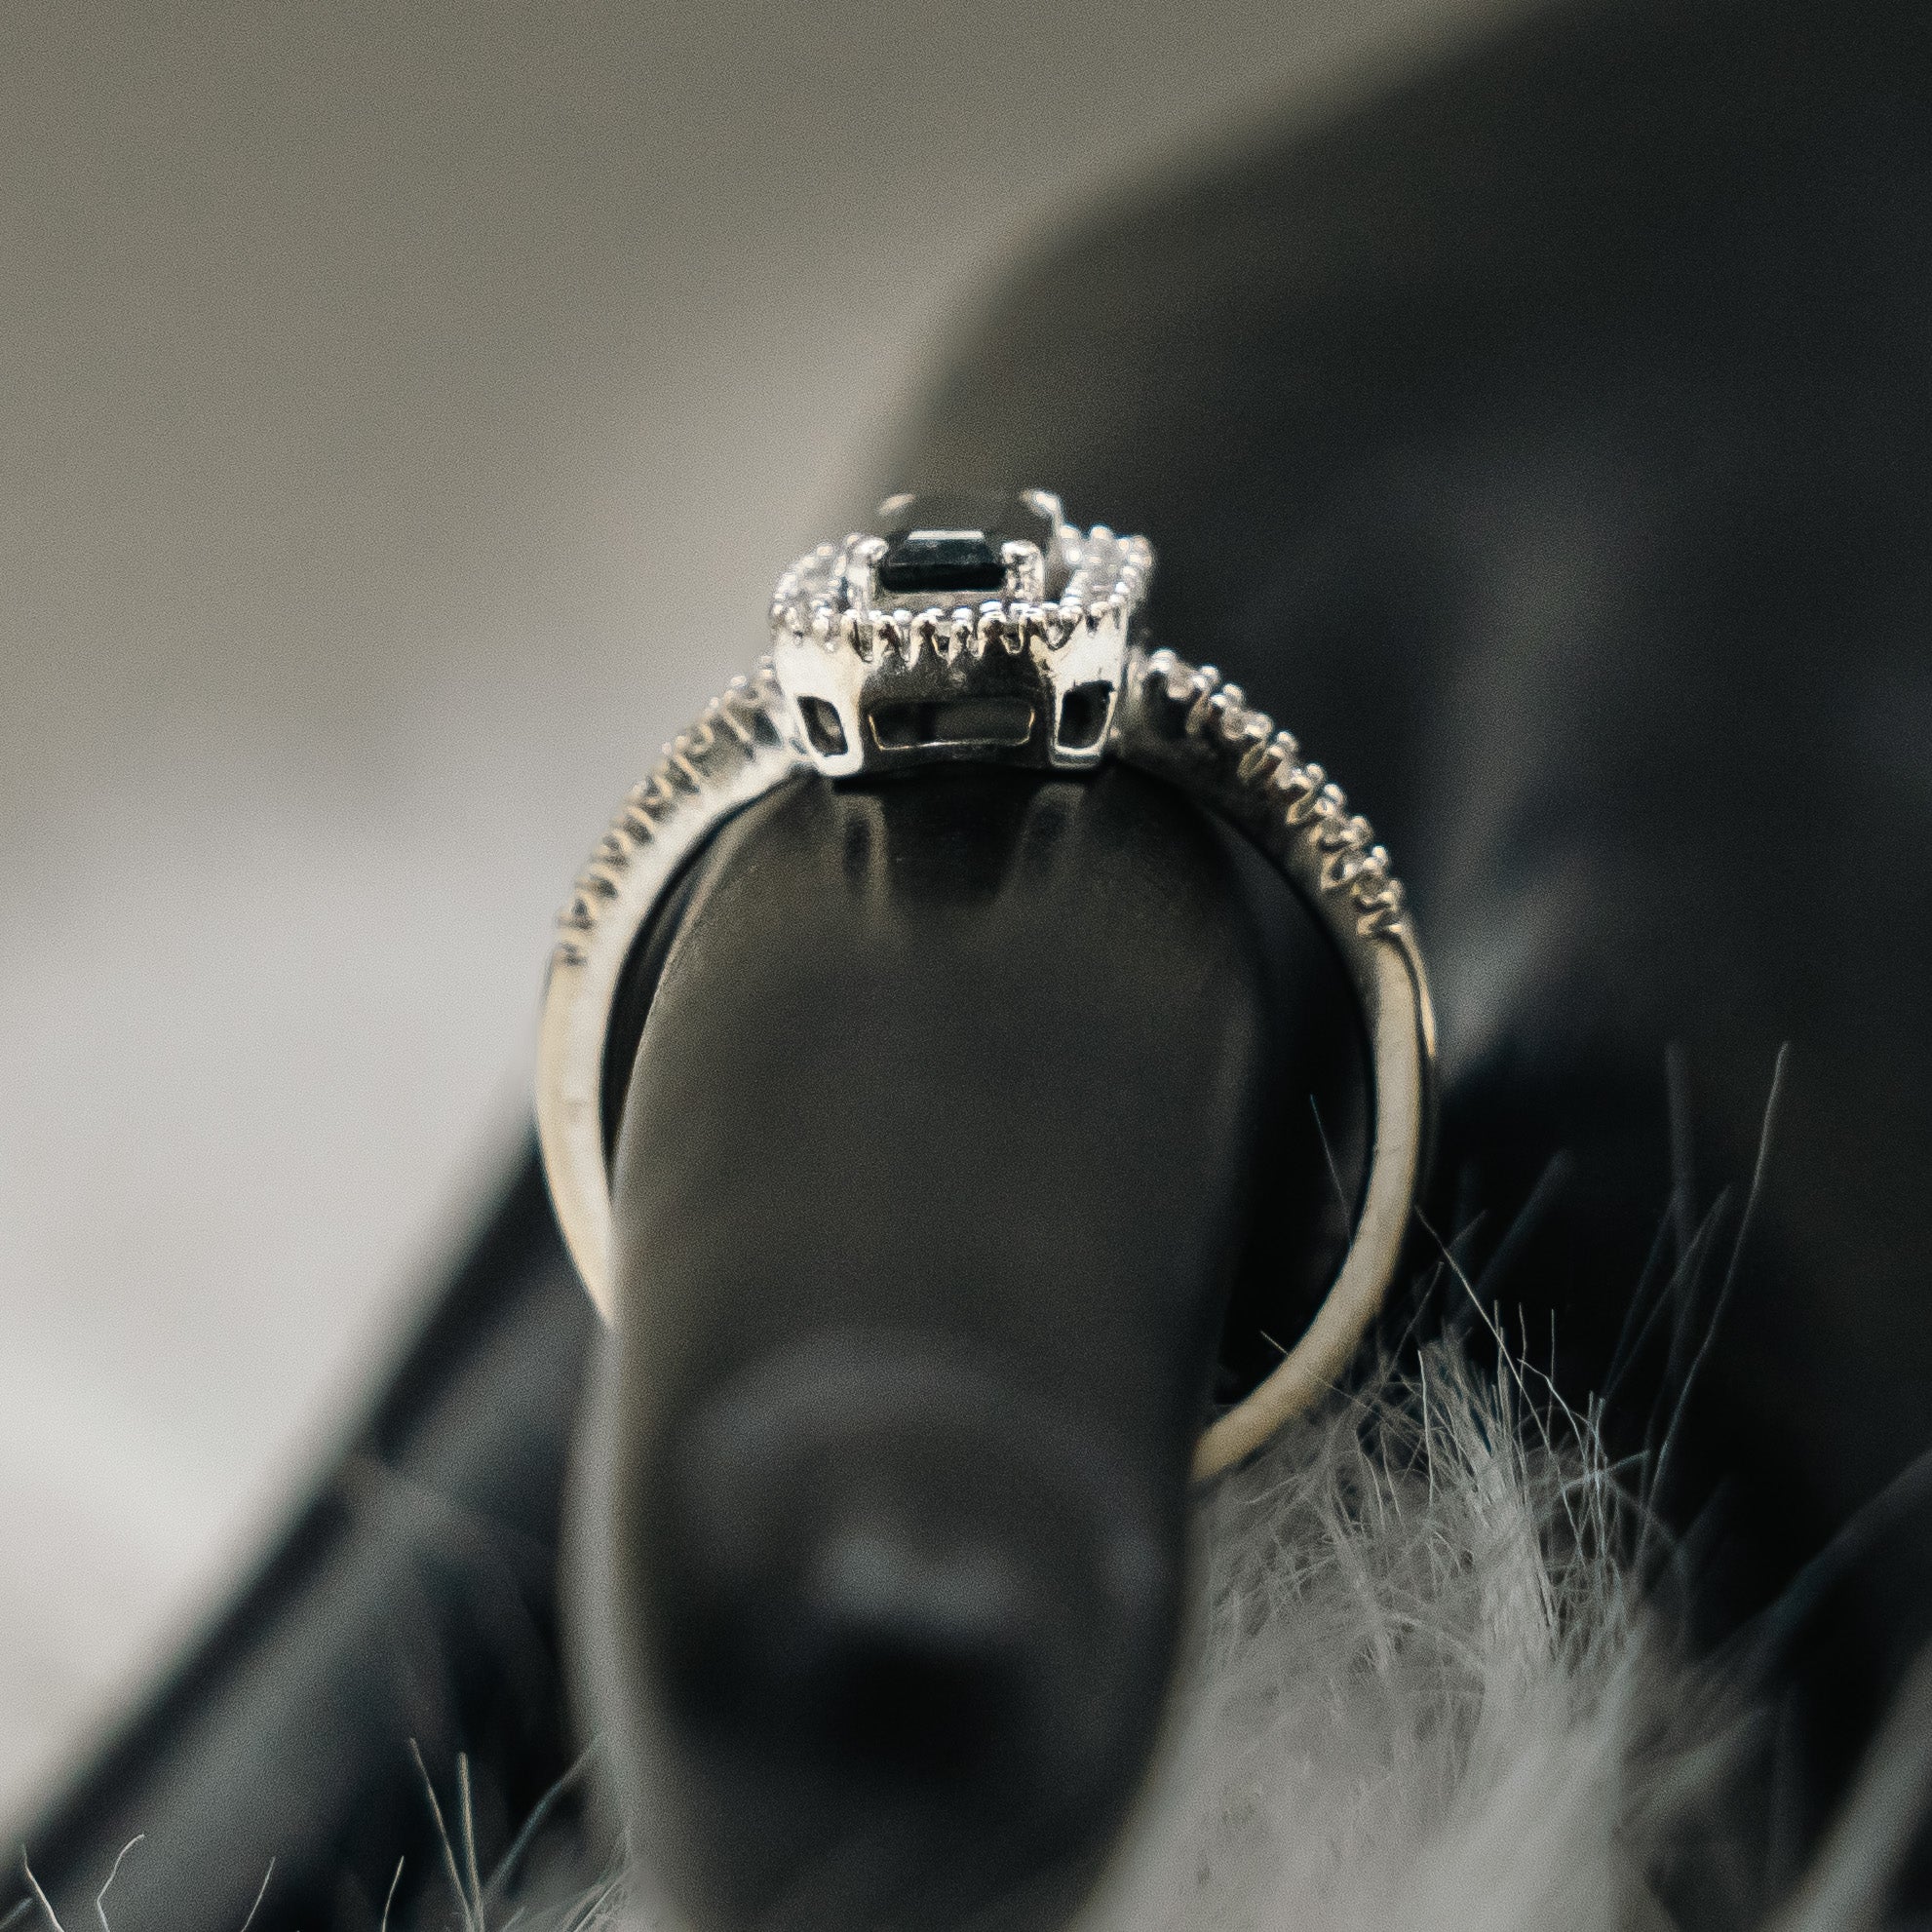 Black Diamonds Engagement Ring 14K White Gold / 2.6gr / Size 7